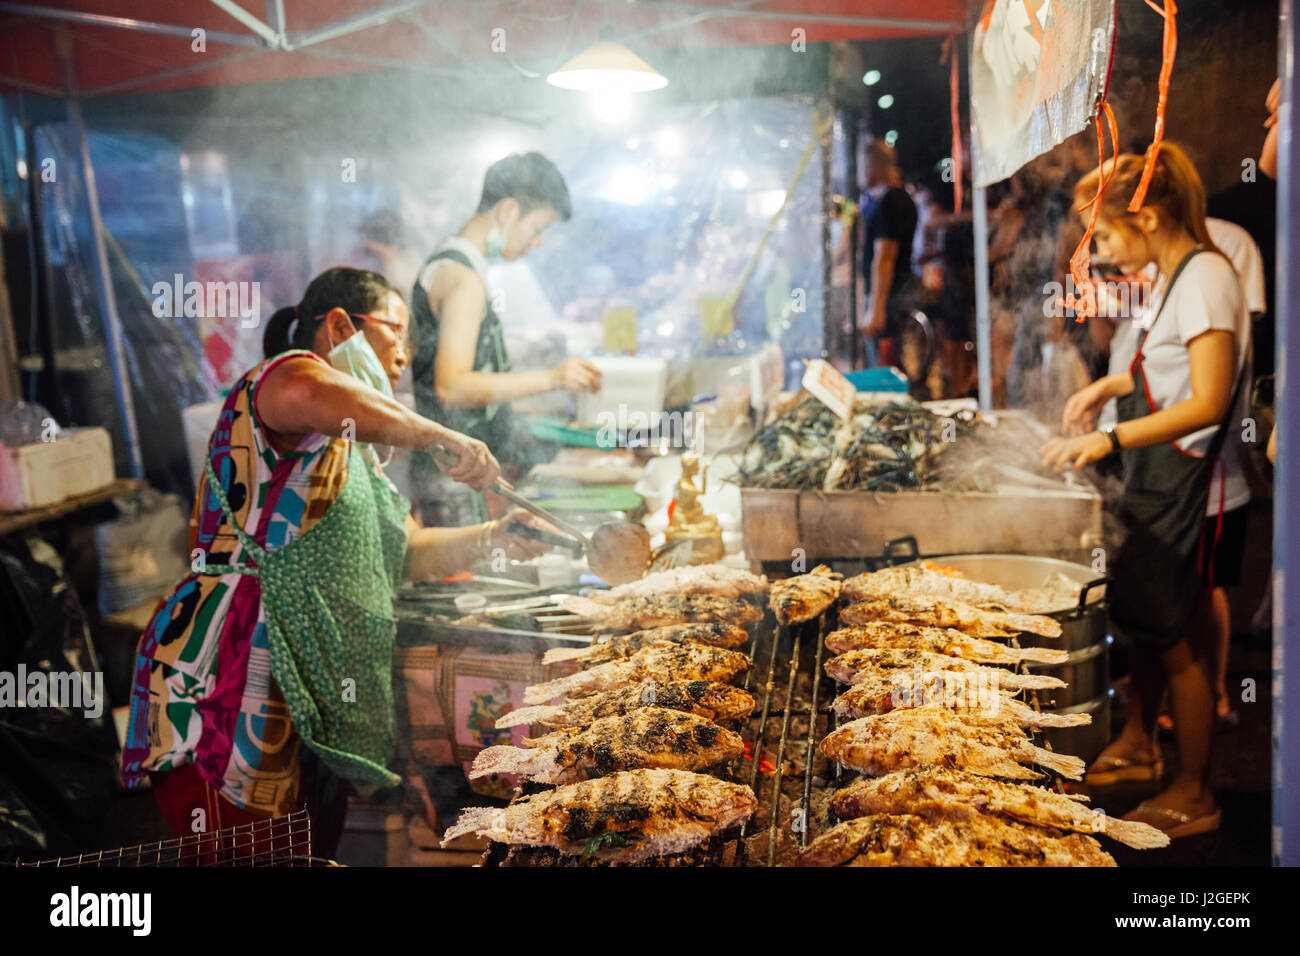 CHIANG MAI, THAÏLANDE - 27 août : le vendeur alimentaire Cuisine poissons et fruits de mer au marché du samedi soir (walking street) Le 27 août 2016 à Chiang Mai, T Banque D'Images